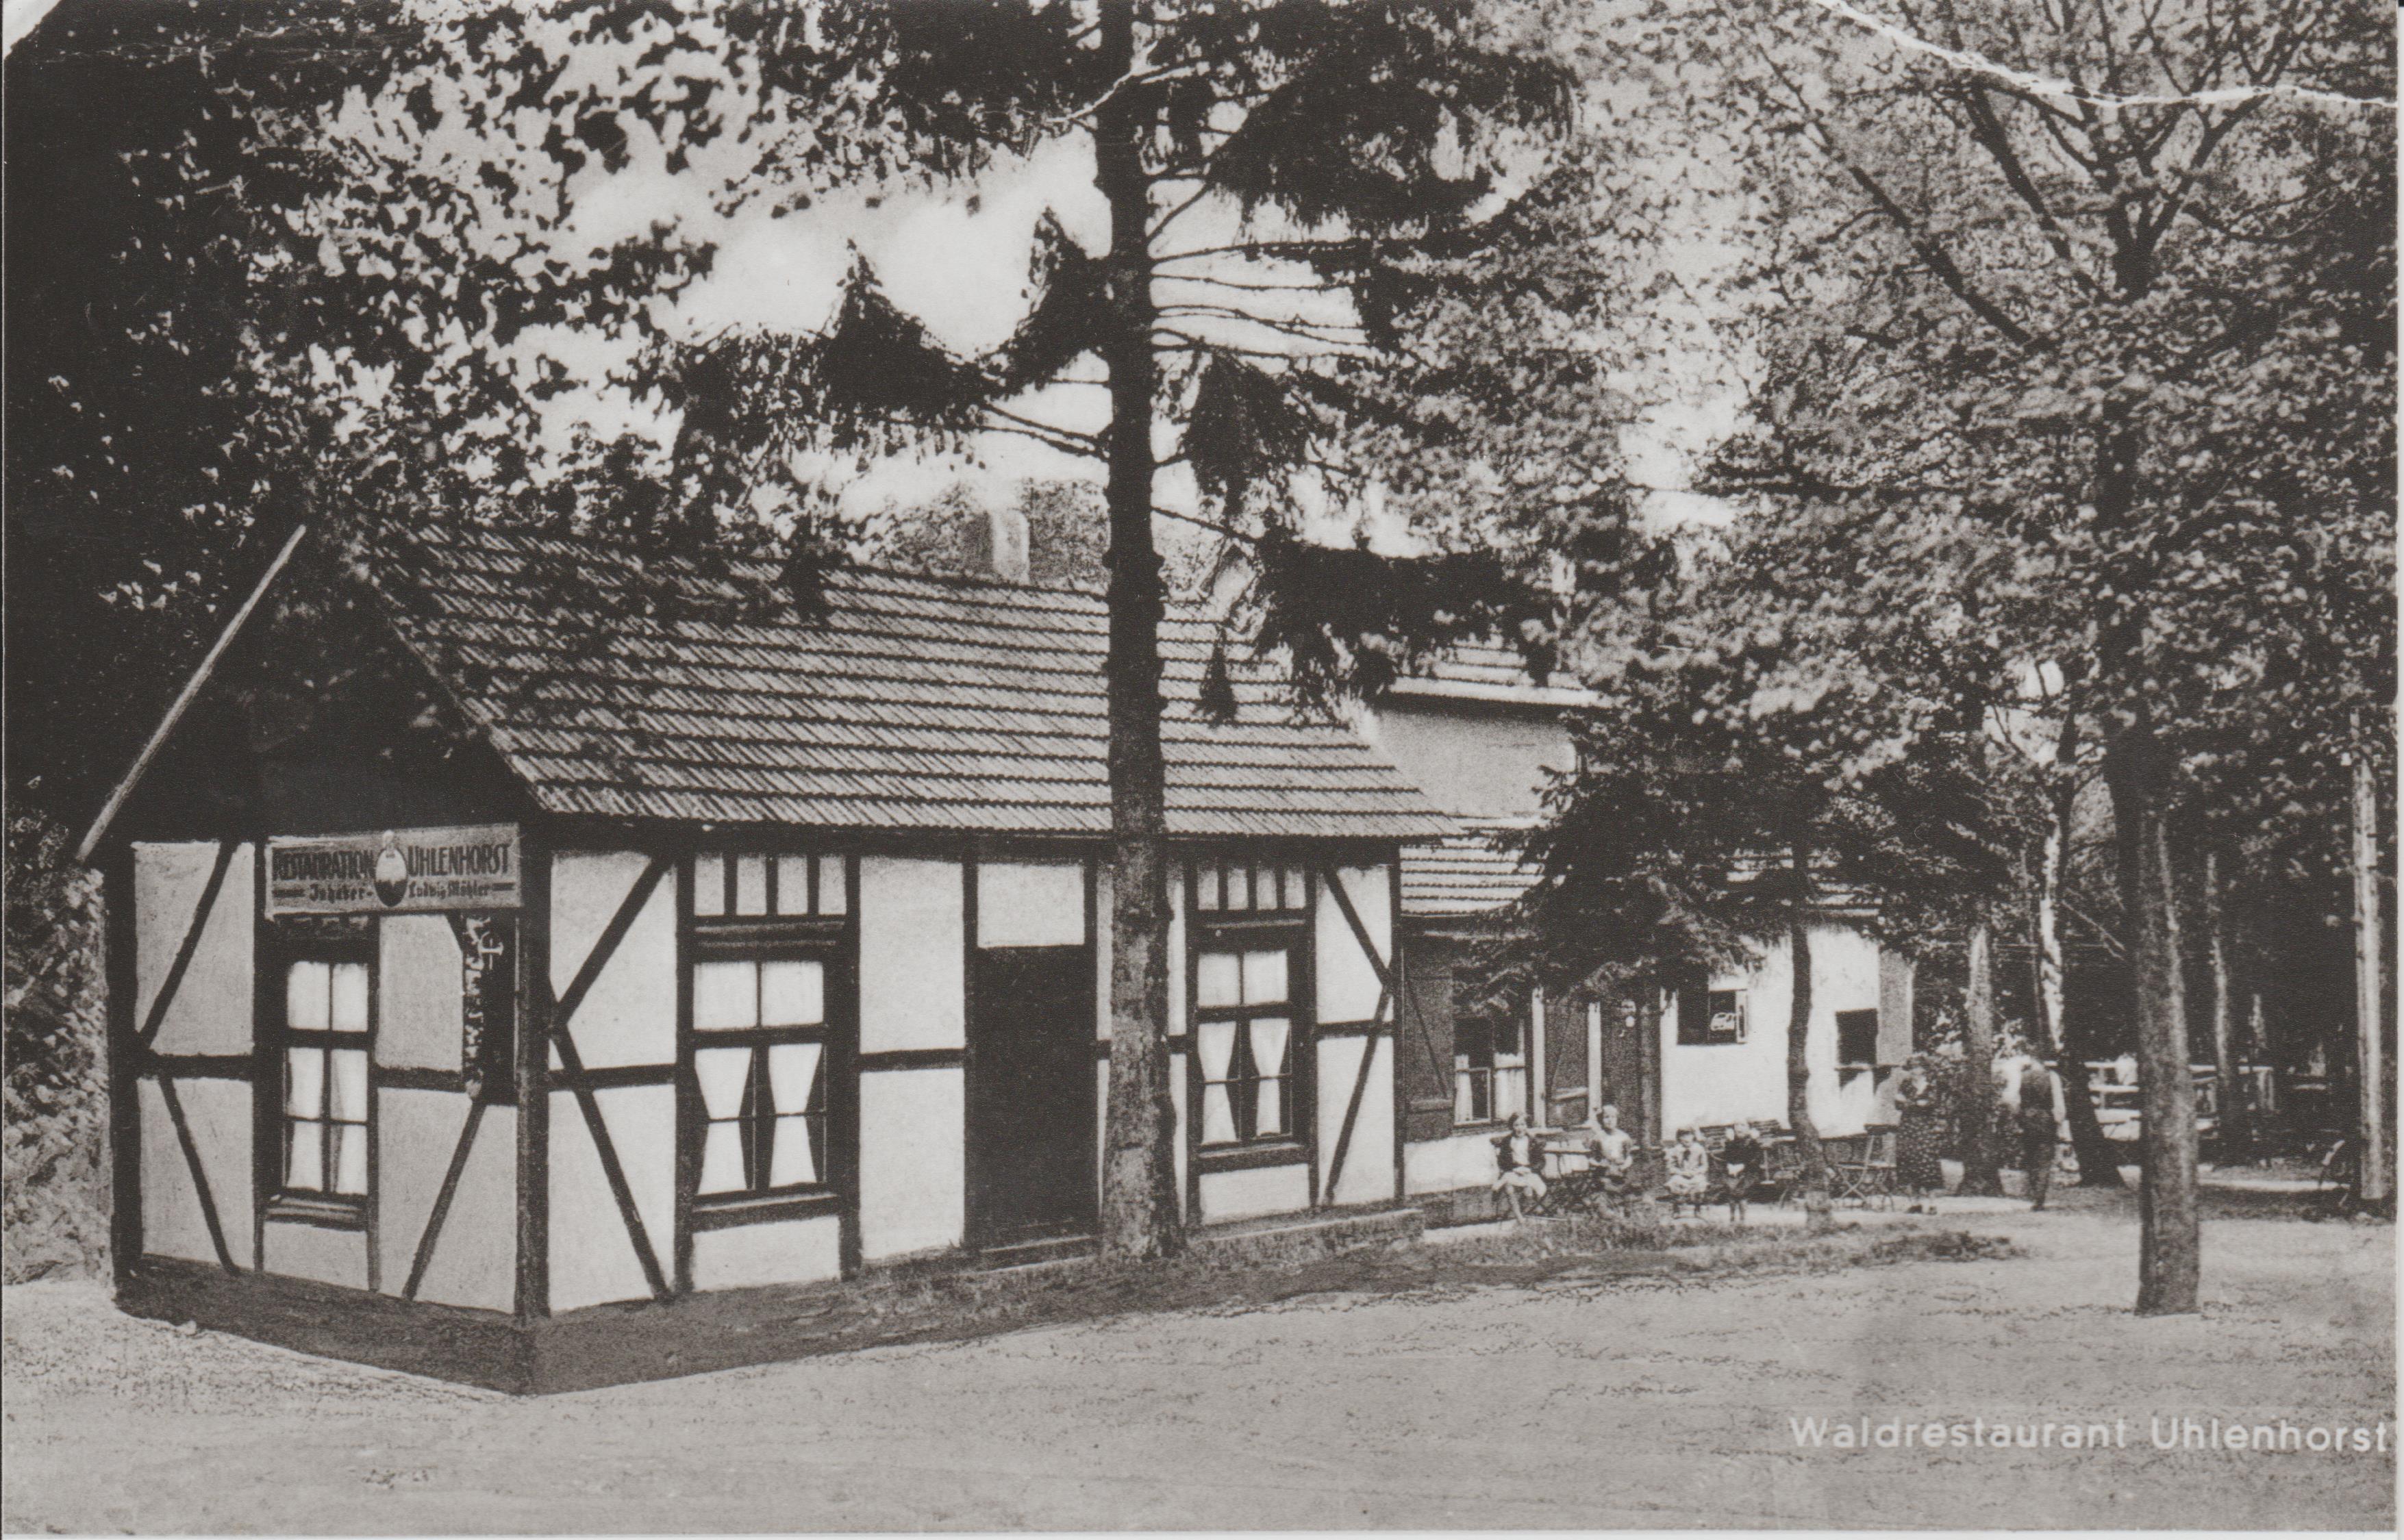 Waldrestaurant Uhlenhorst in Bendorf (REM CC BY-NC-SA)